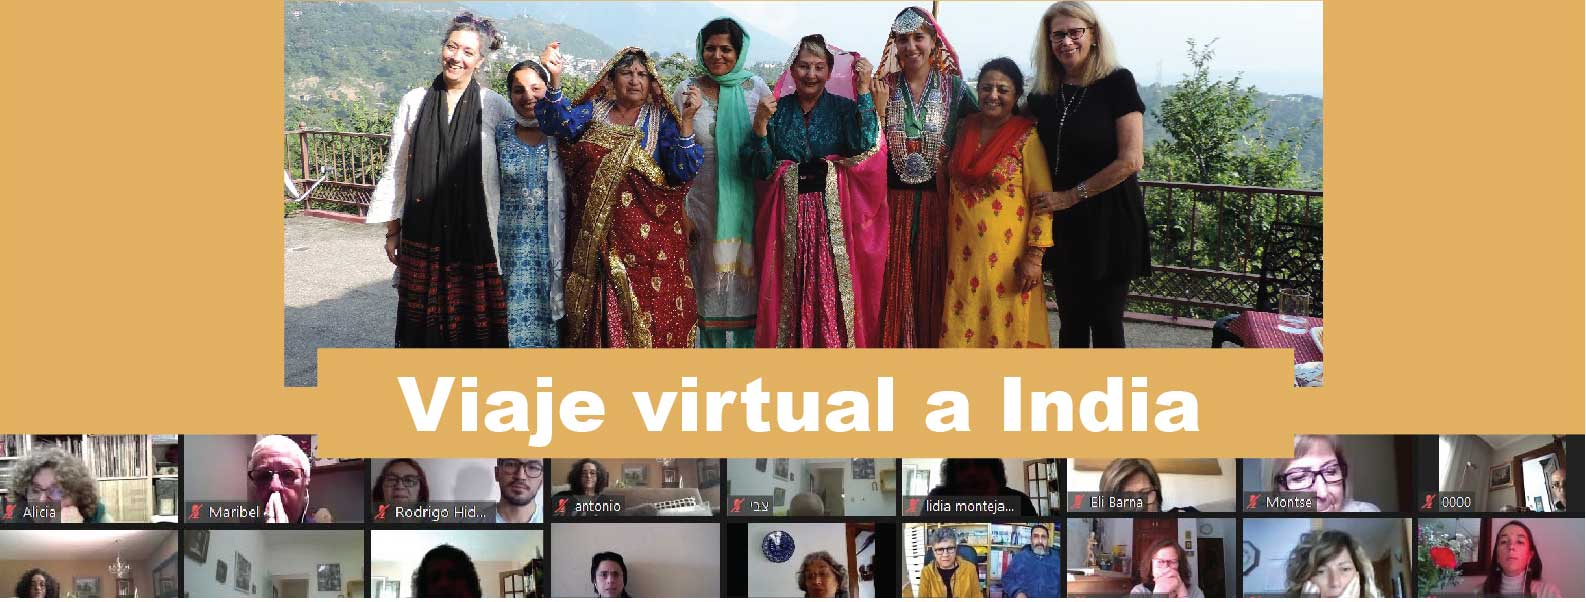 viaje-virtual y solidario-India